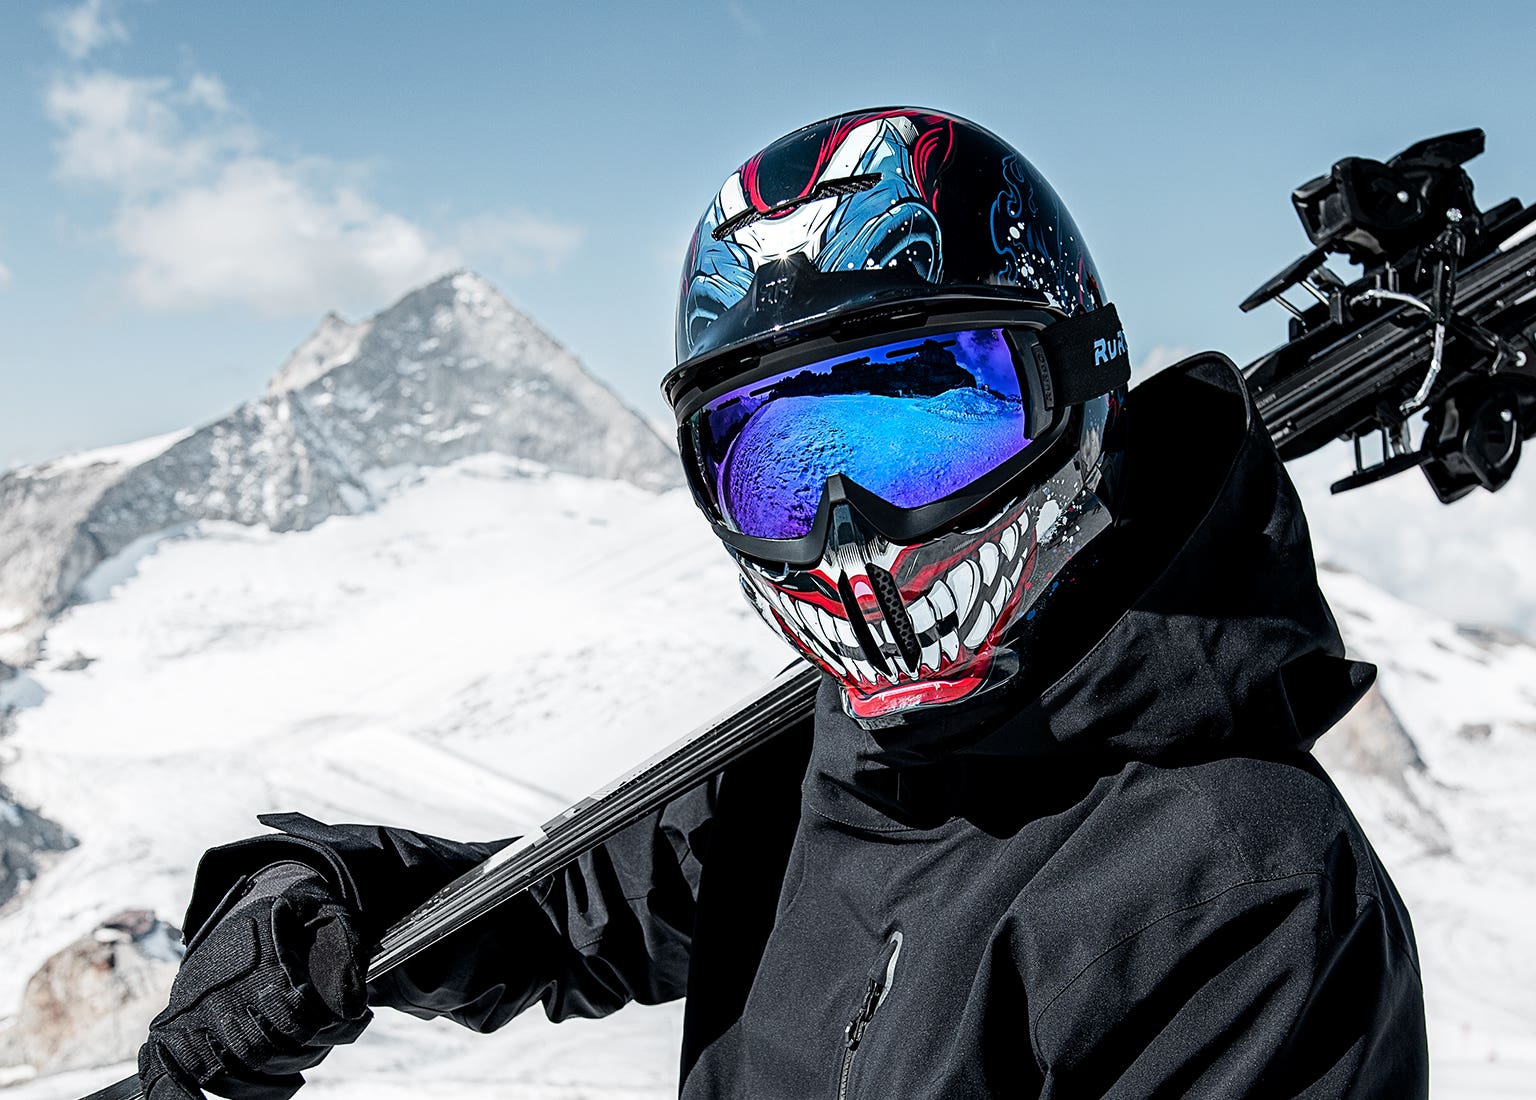 Gek Geaccepteerd Reparatie mogelijk Ruroc | Snow Sports Helmets | Full Face & Open Face Ski / Snowboard Helmets